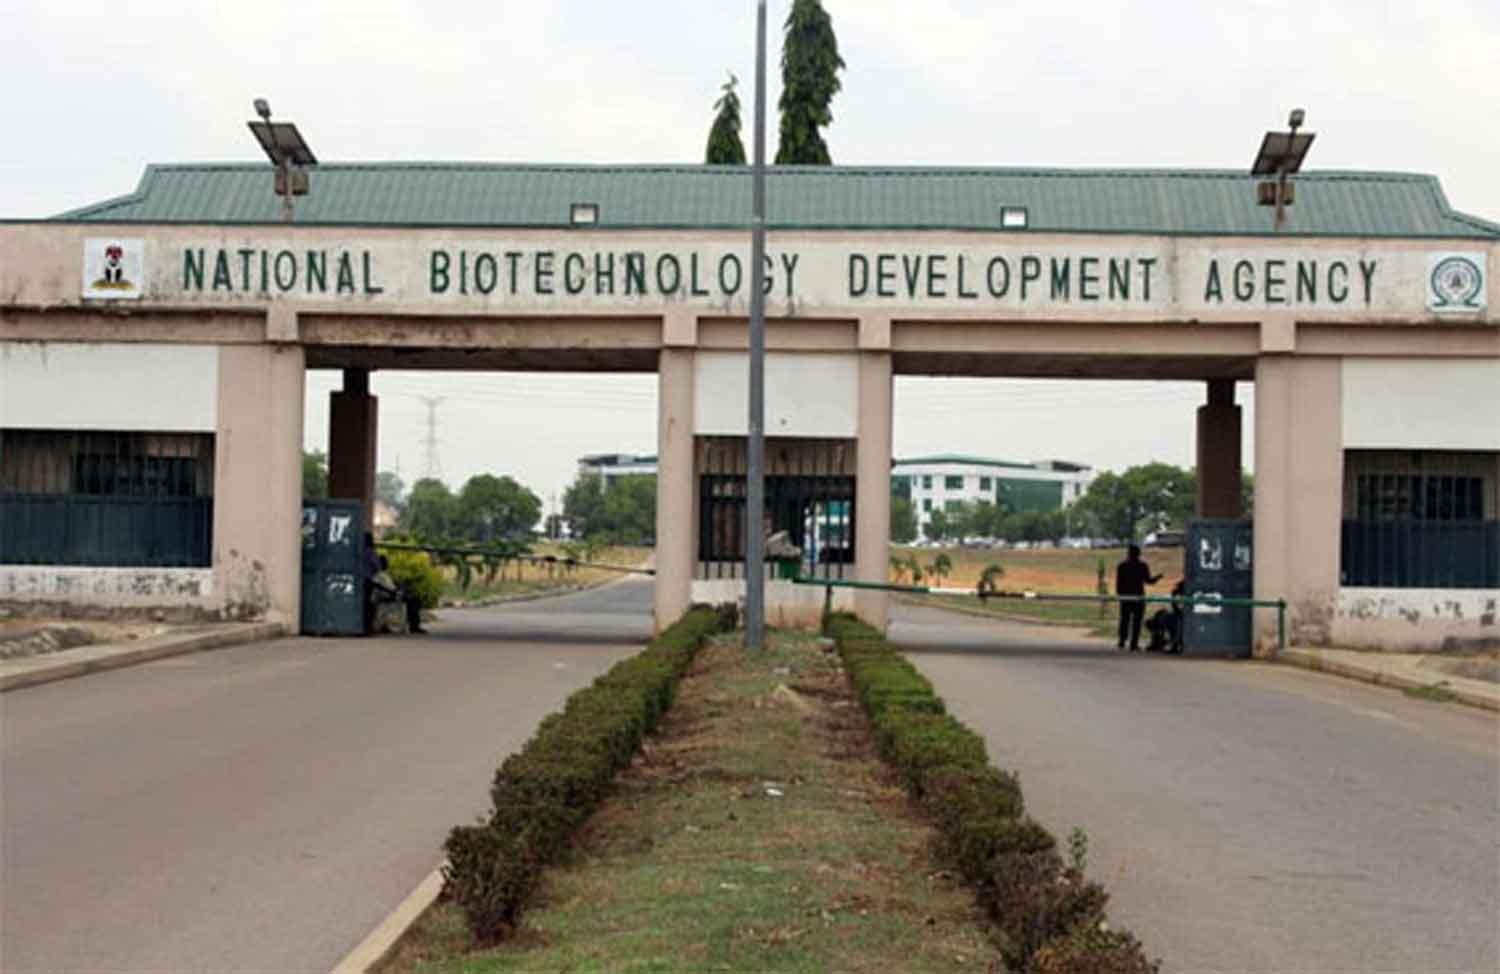 NABDA National Biotechnology Development Agency